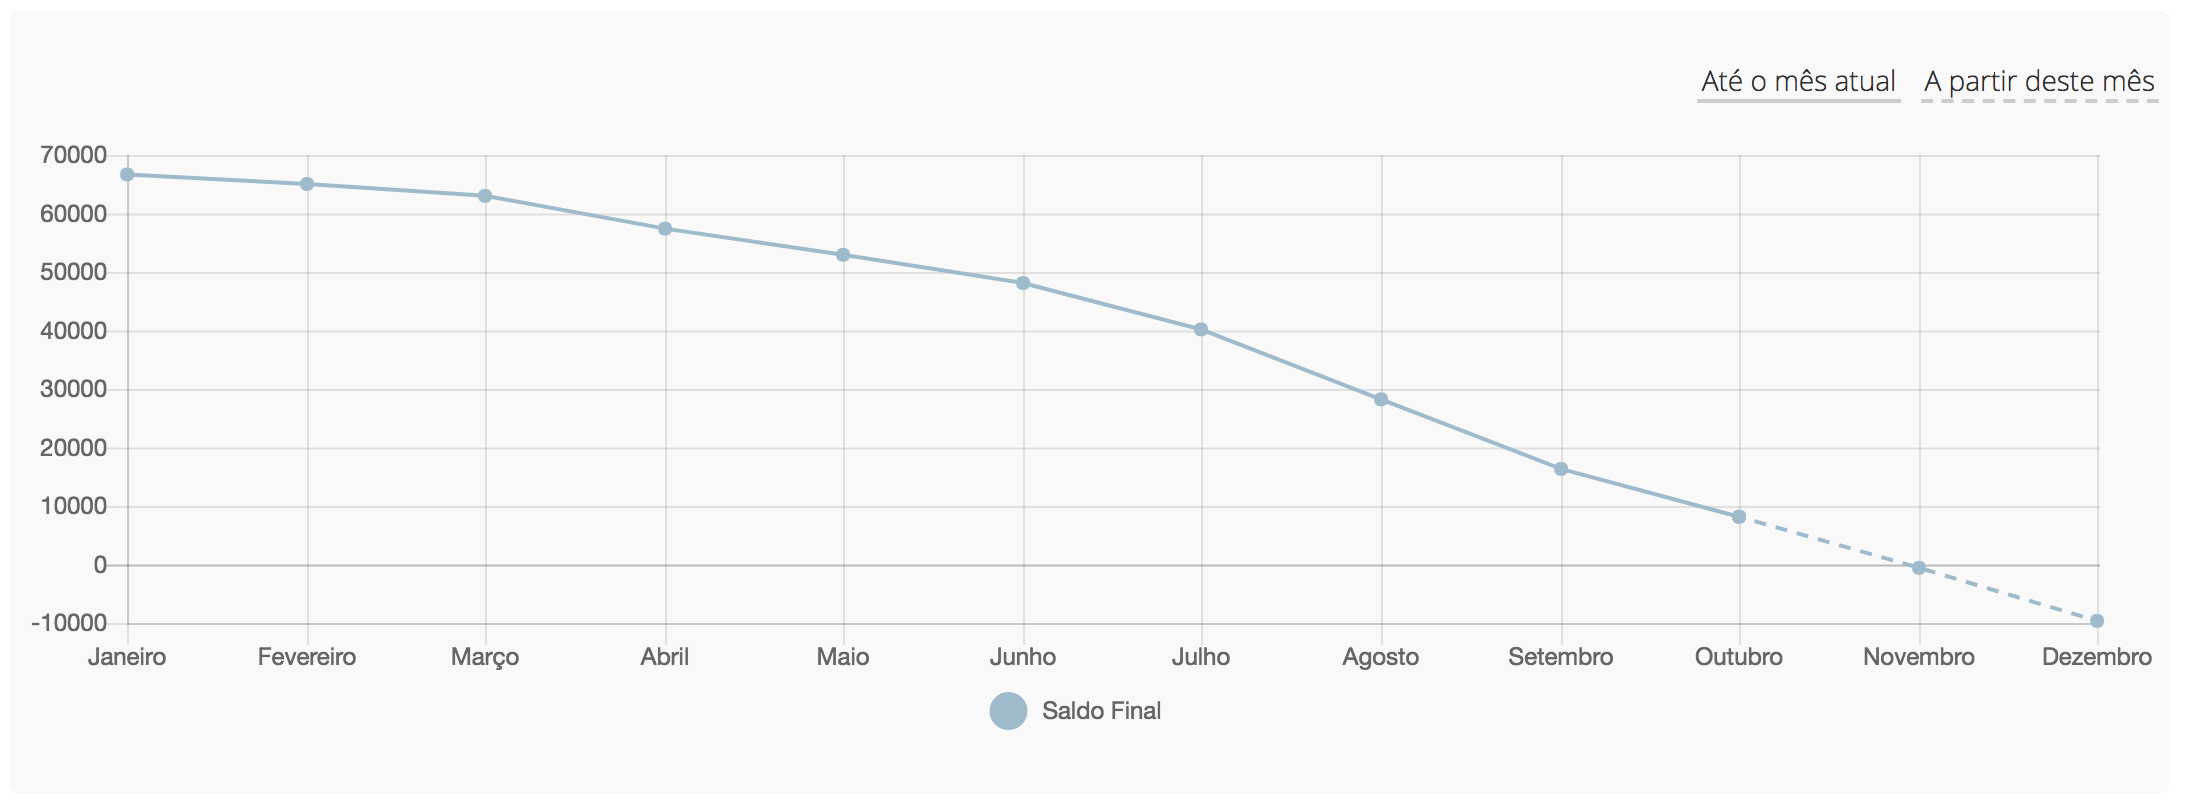 Gráfico do fluxo de caixa mensal